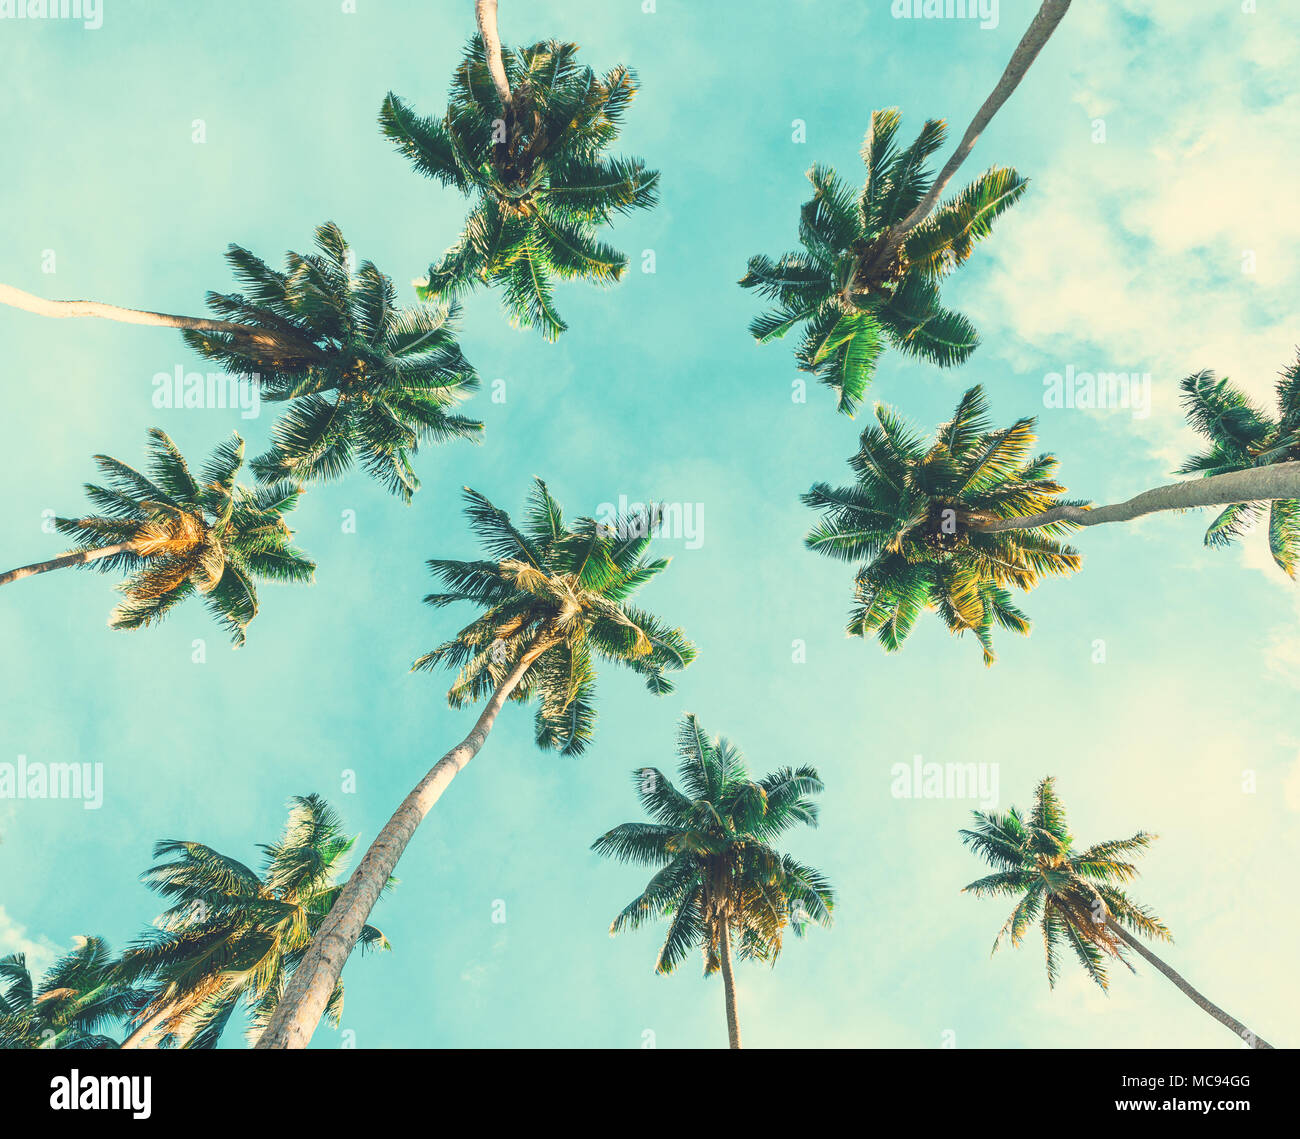 Kokospalmen am Himmel Hintergrund. Getönten Bild. Low Angle View. Stockfoto